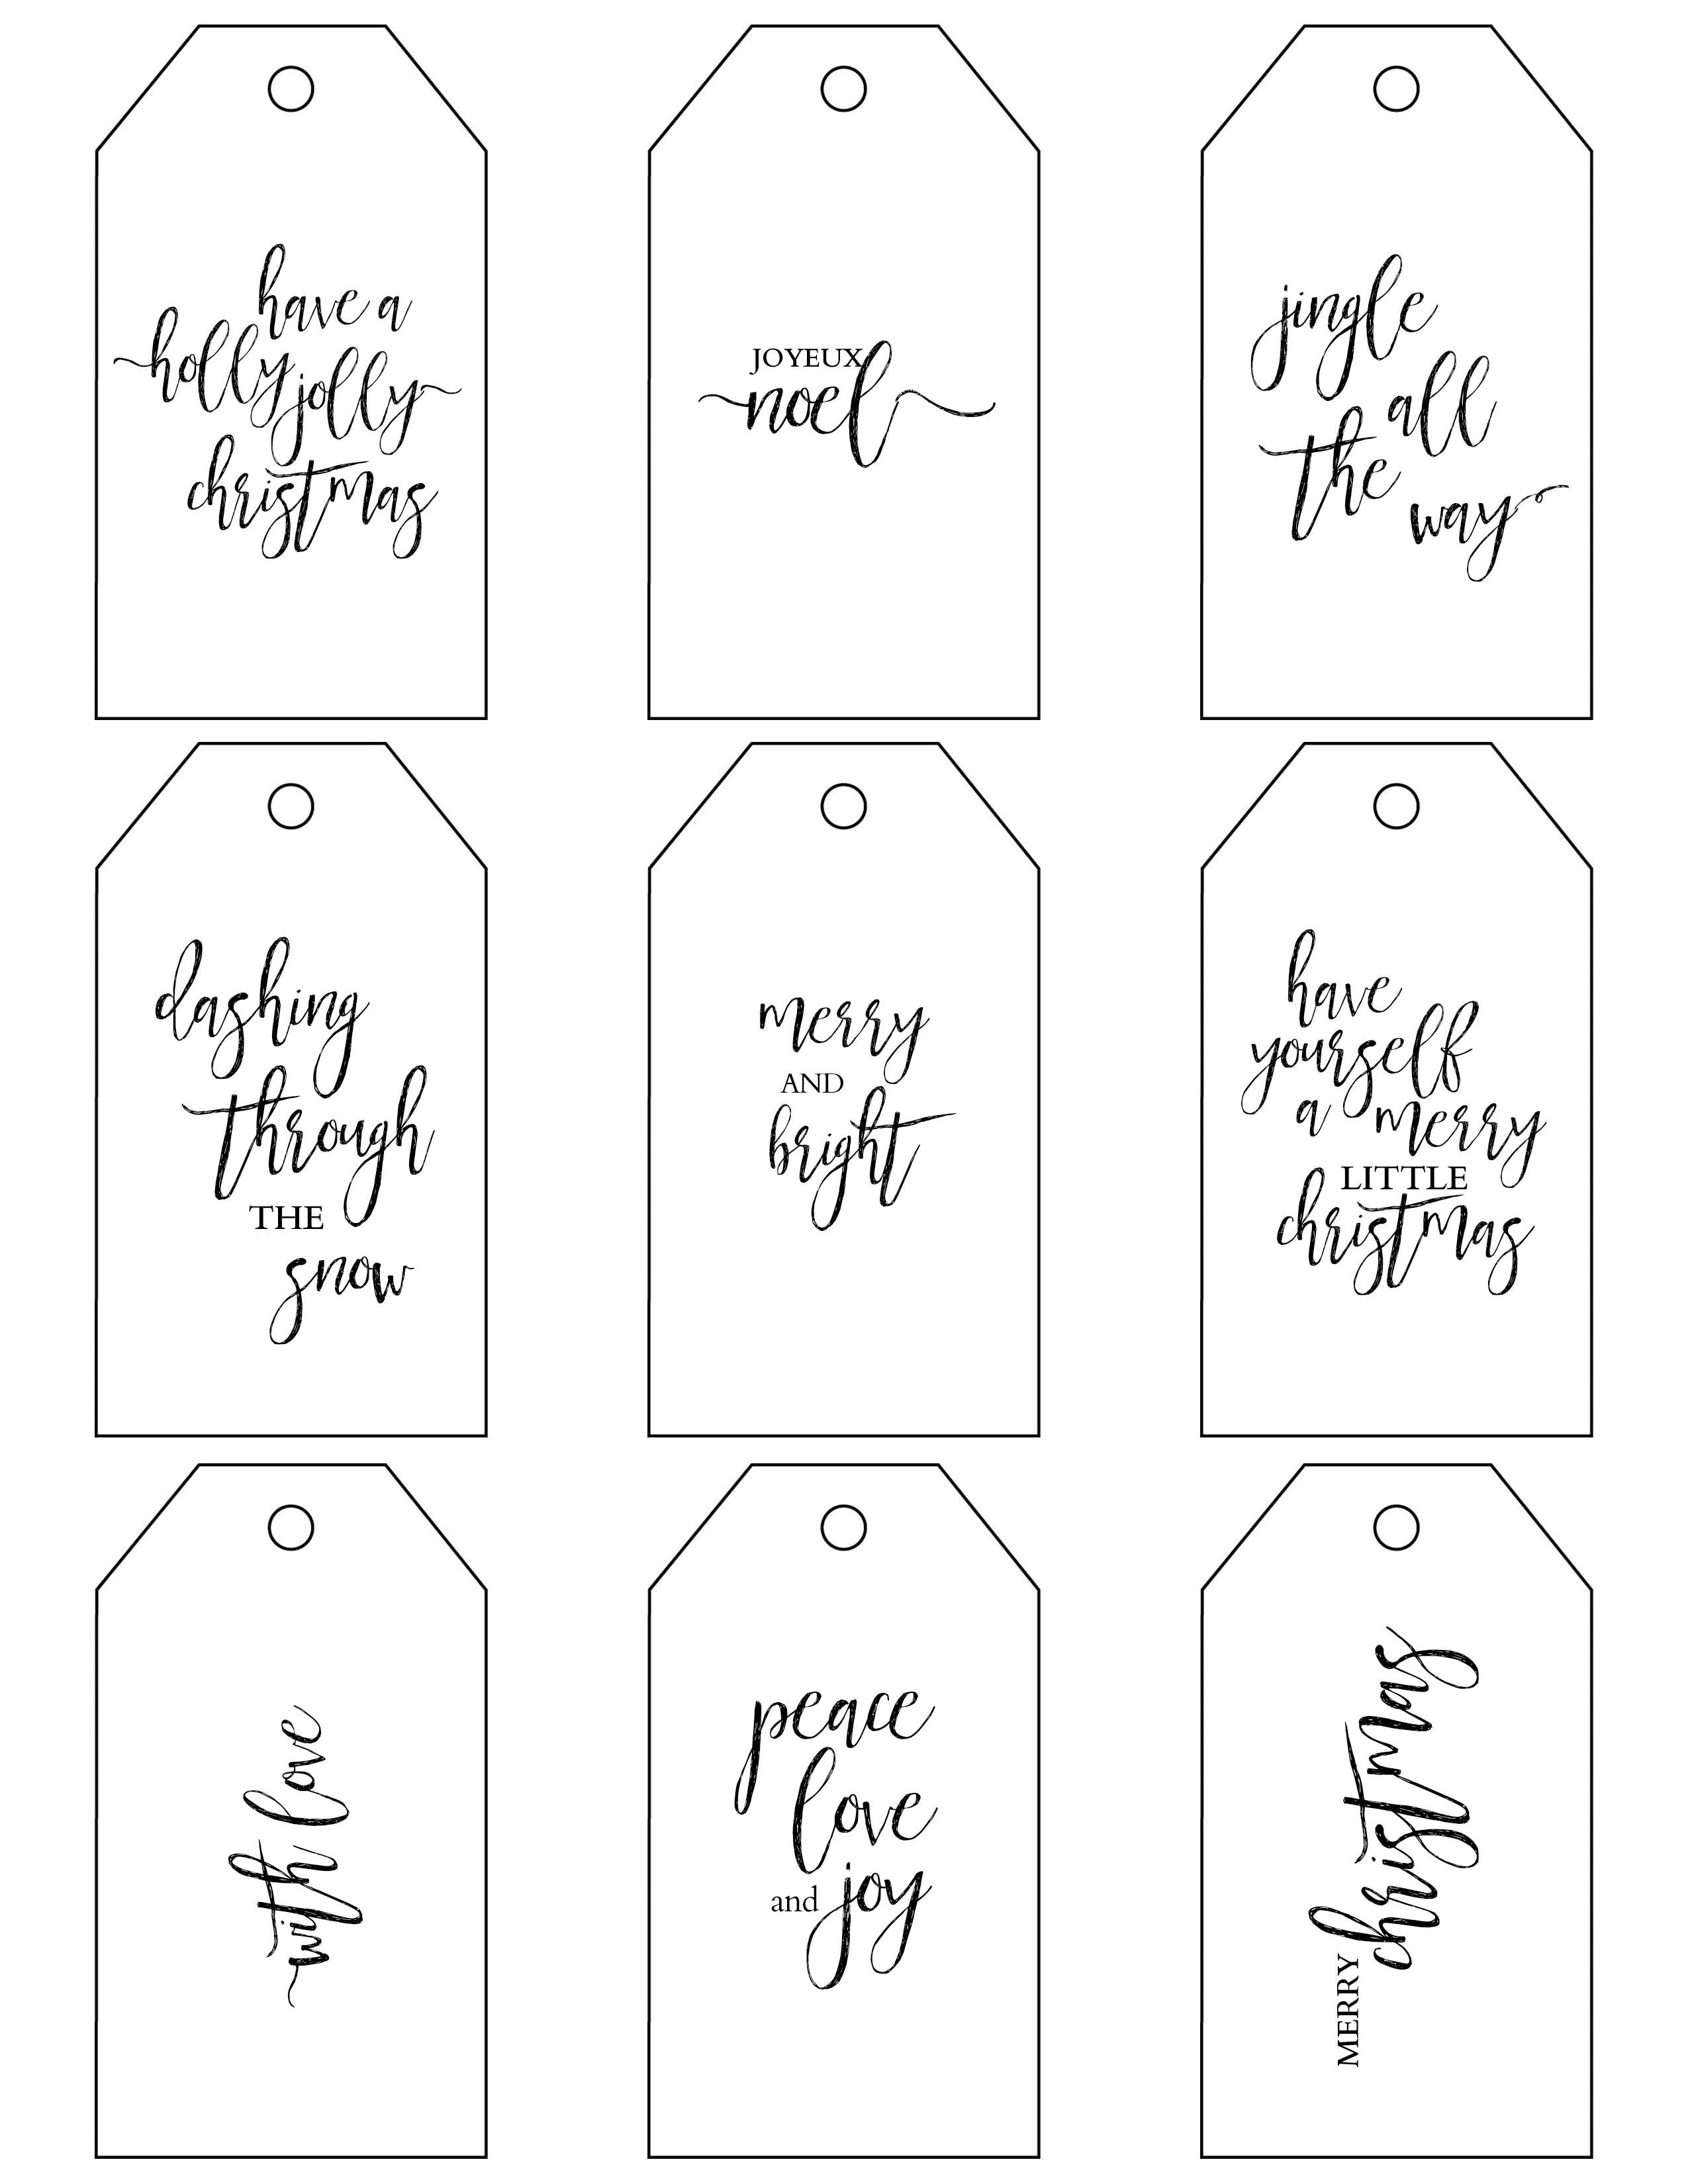 Printable Christmas Gift Tags Make Holiday Wrapping Simple - Diy Christmas Gift Tags Free Printable